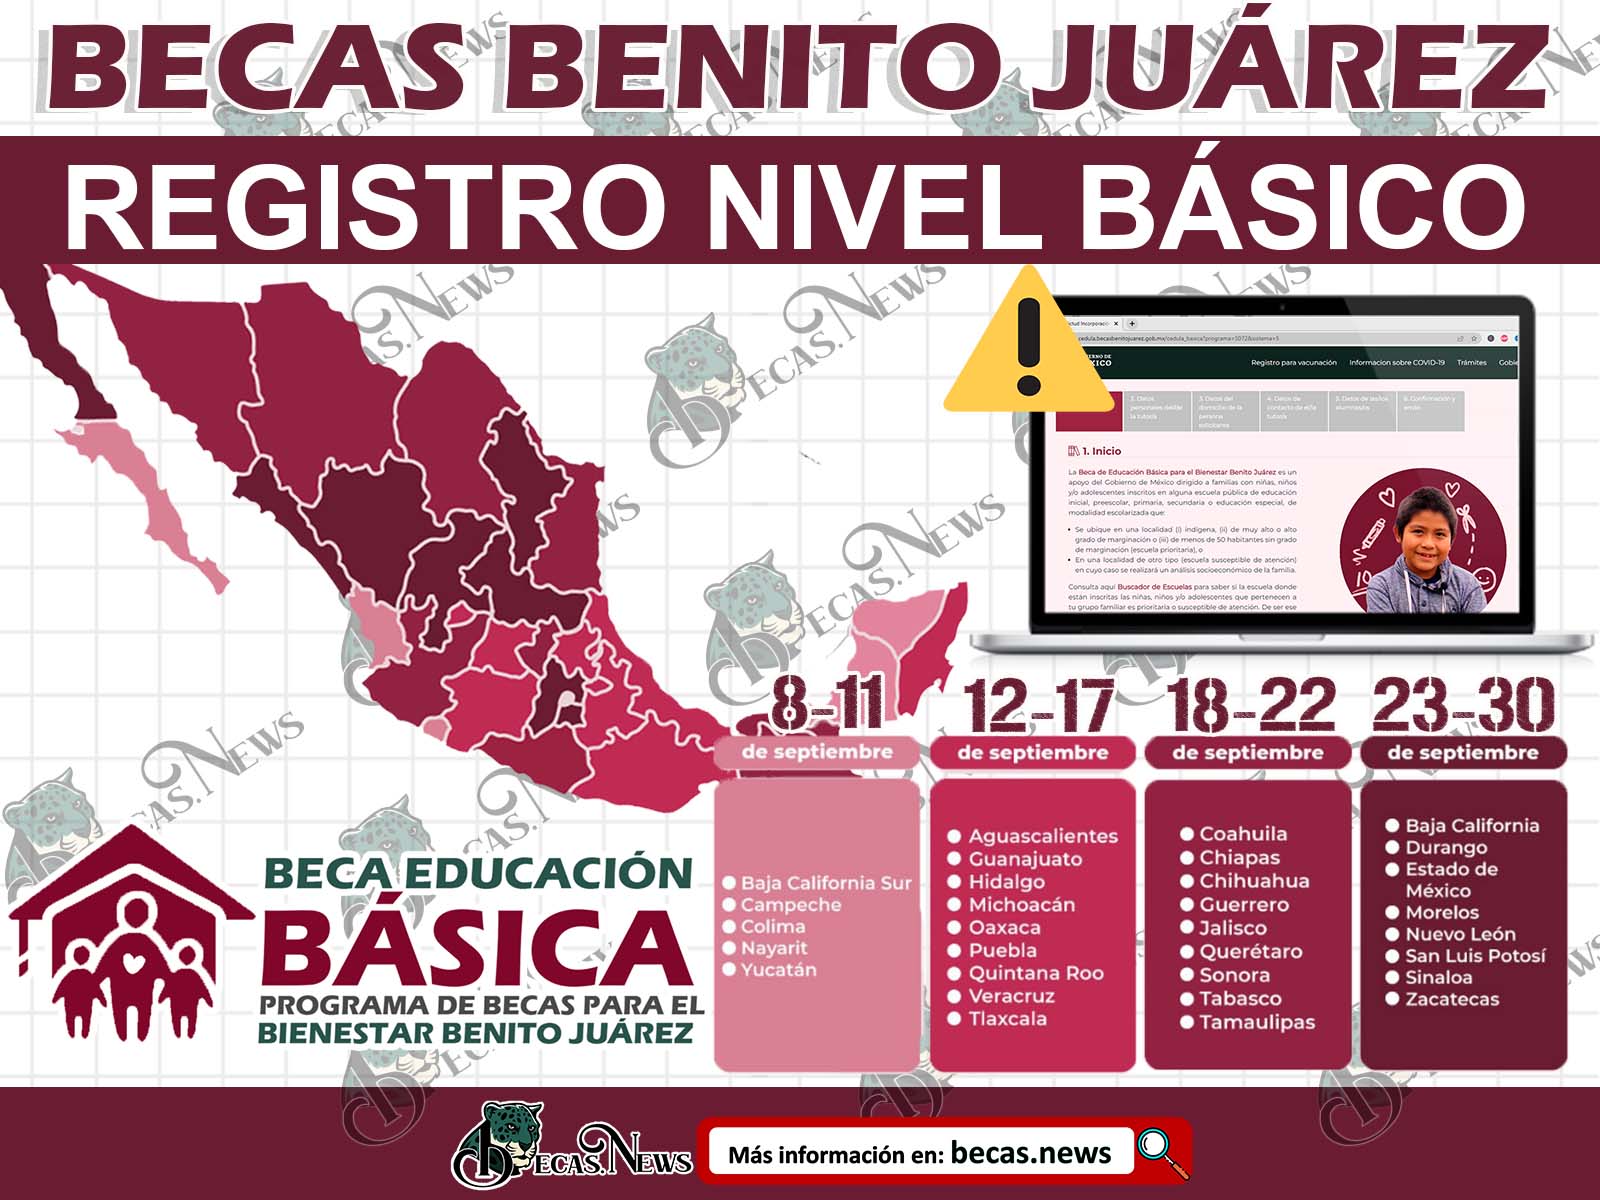 Registro Becas Benito Juárez Comunicado Oficial del 8 al 30 de septiembre ¡Realiza la CSI y CU!